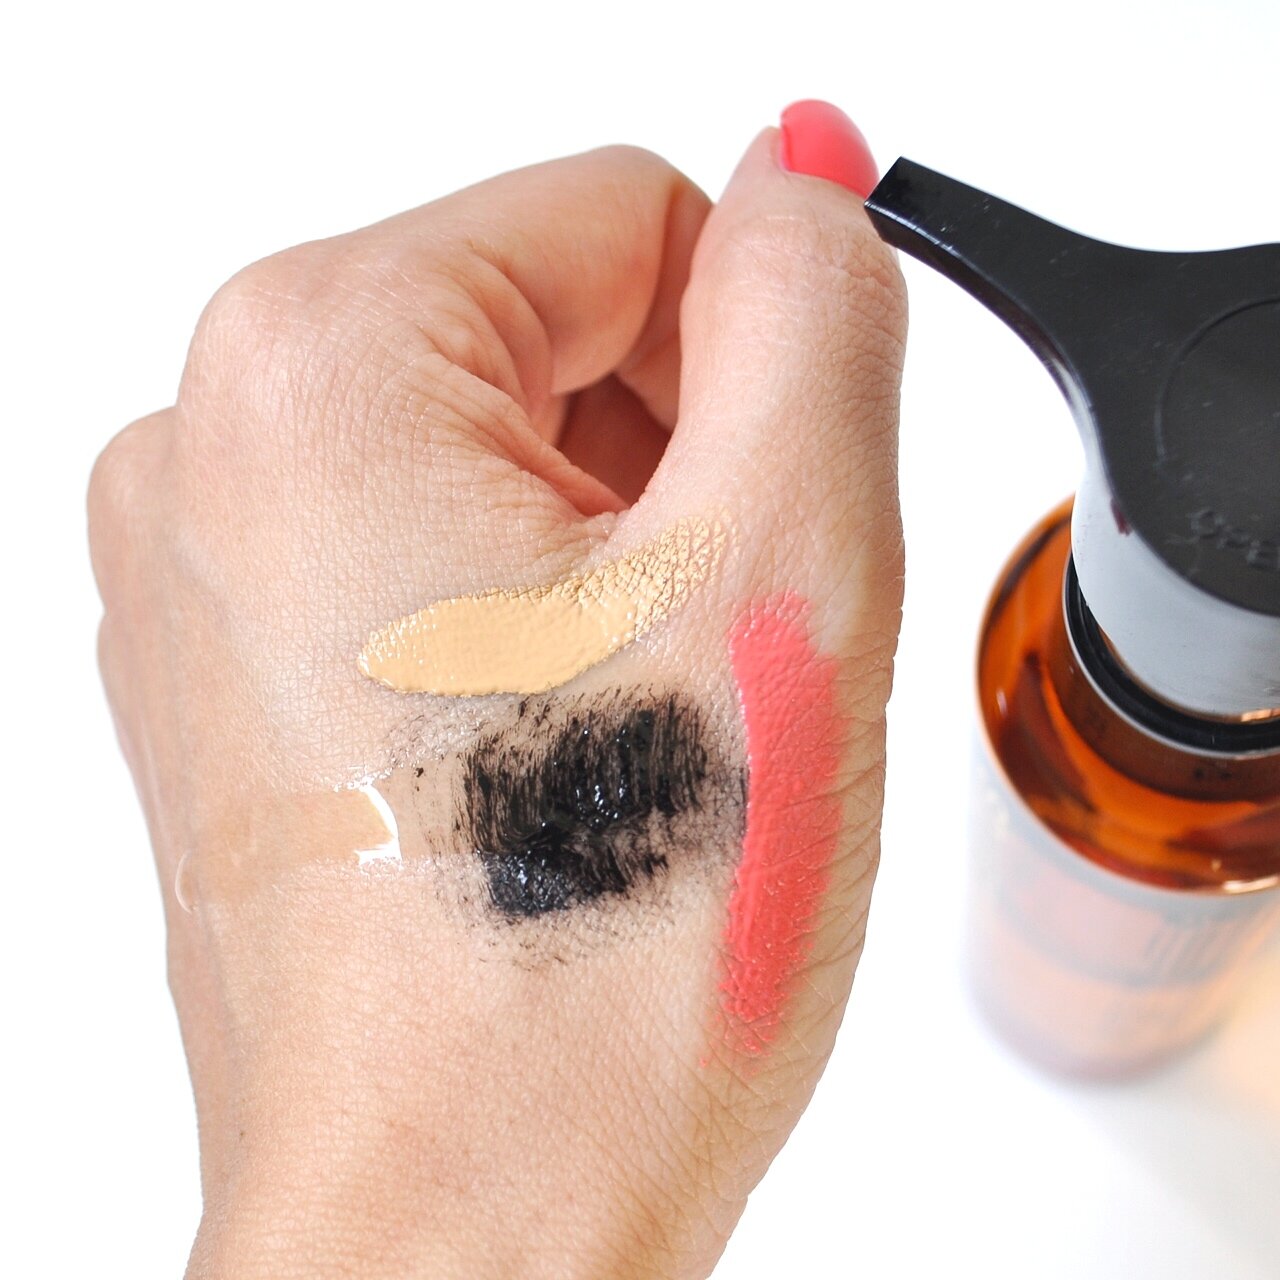 Nếu bạn hay makeup thì dầu tẩy trang chính là loại mà bạn cần dùng